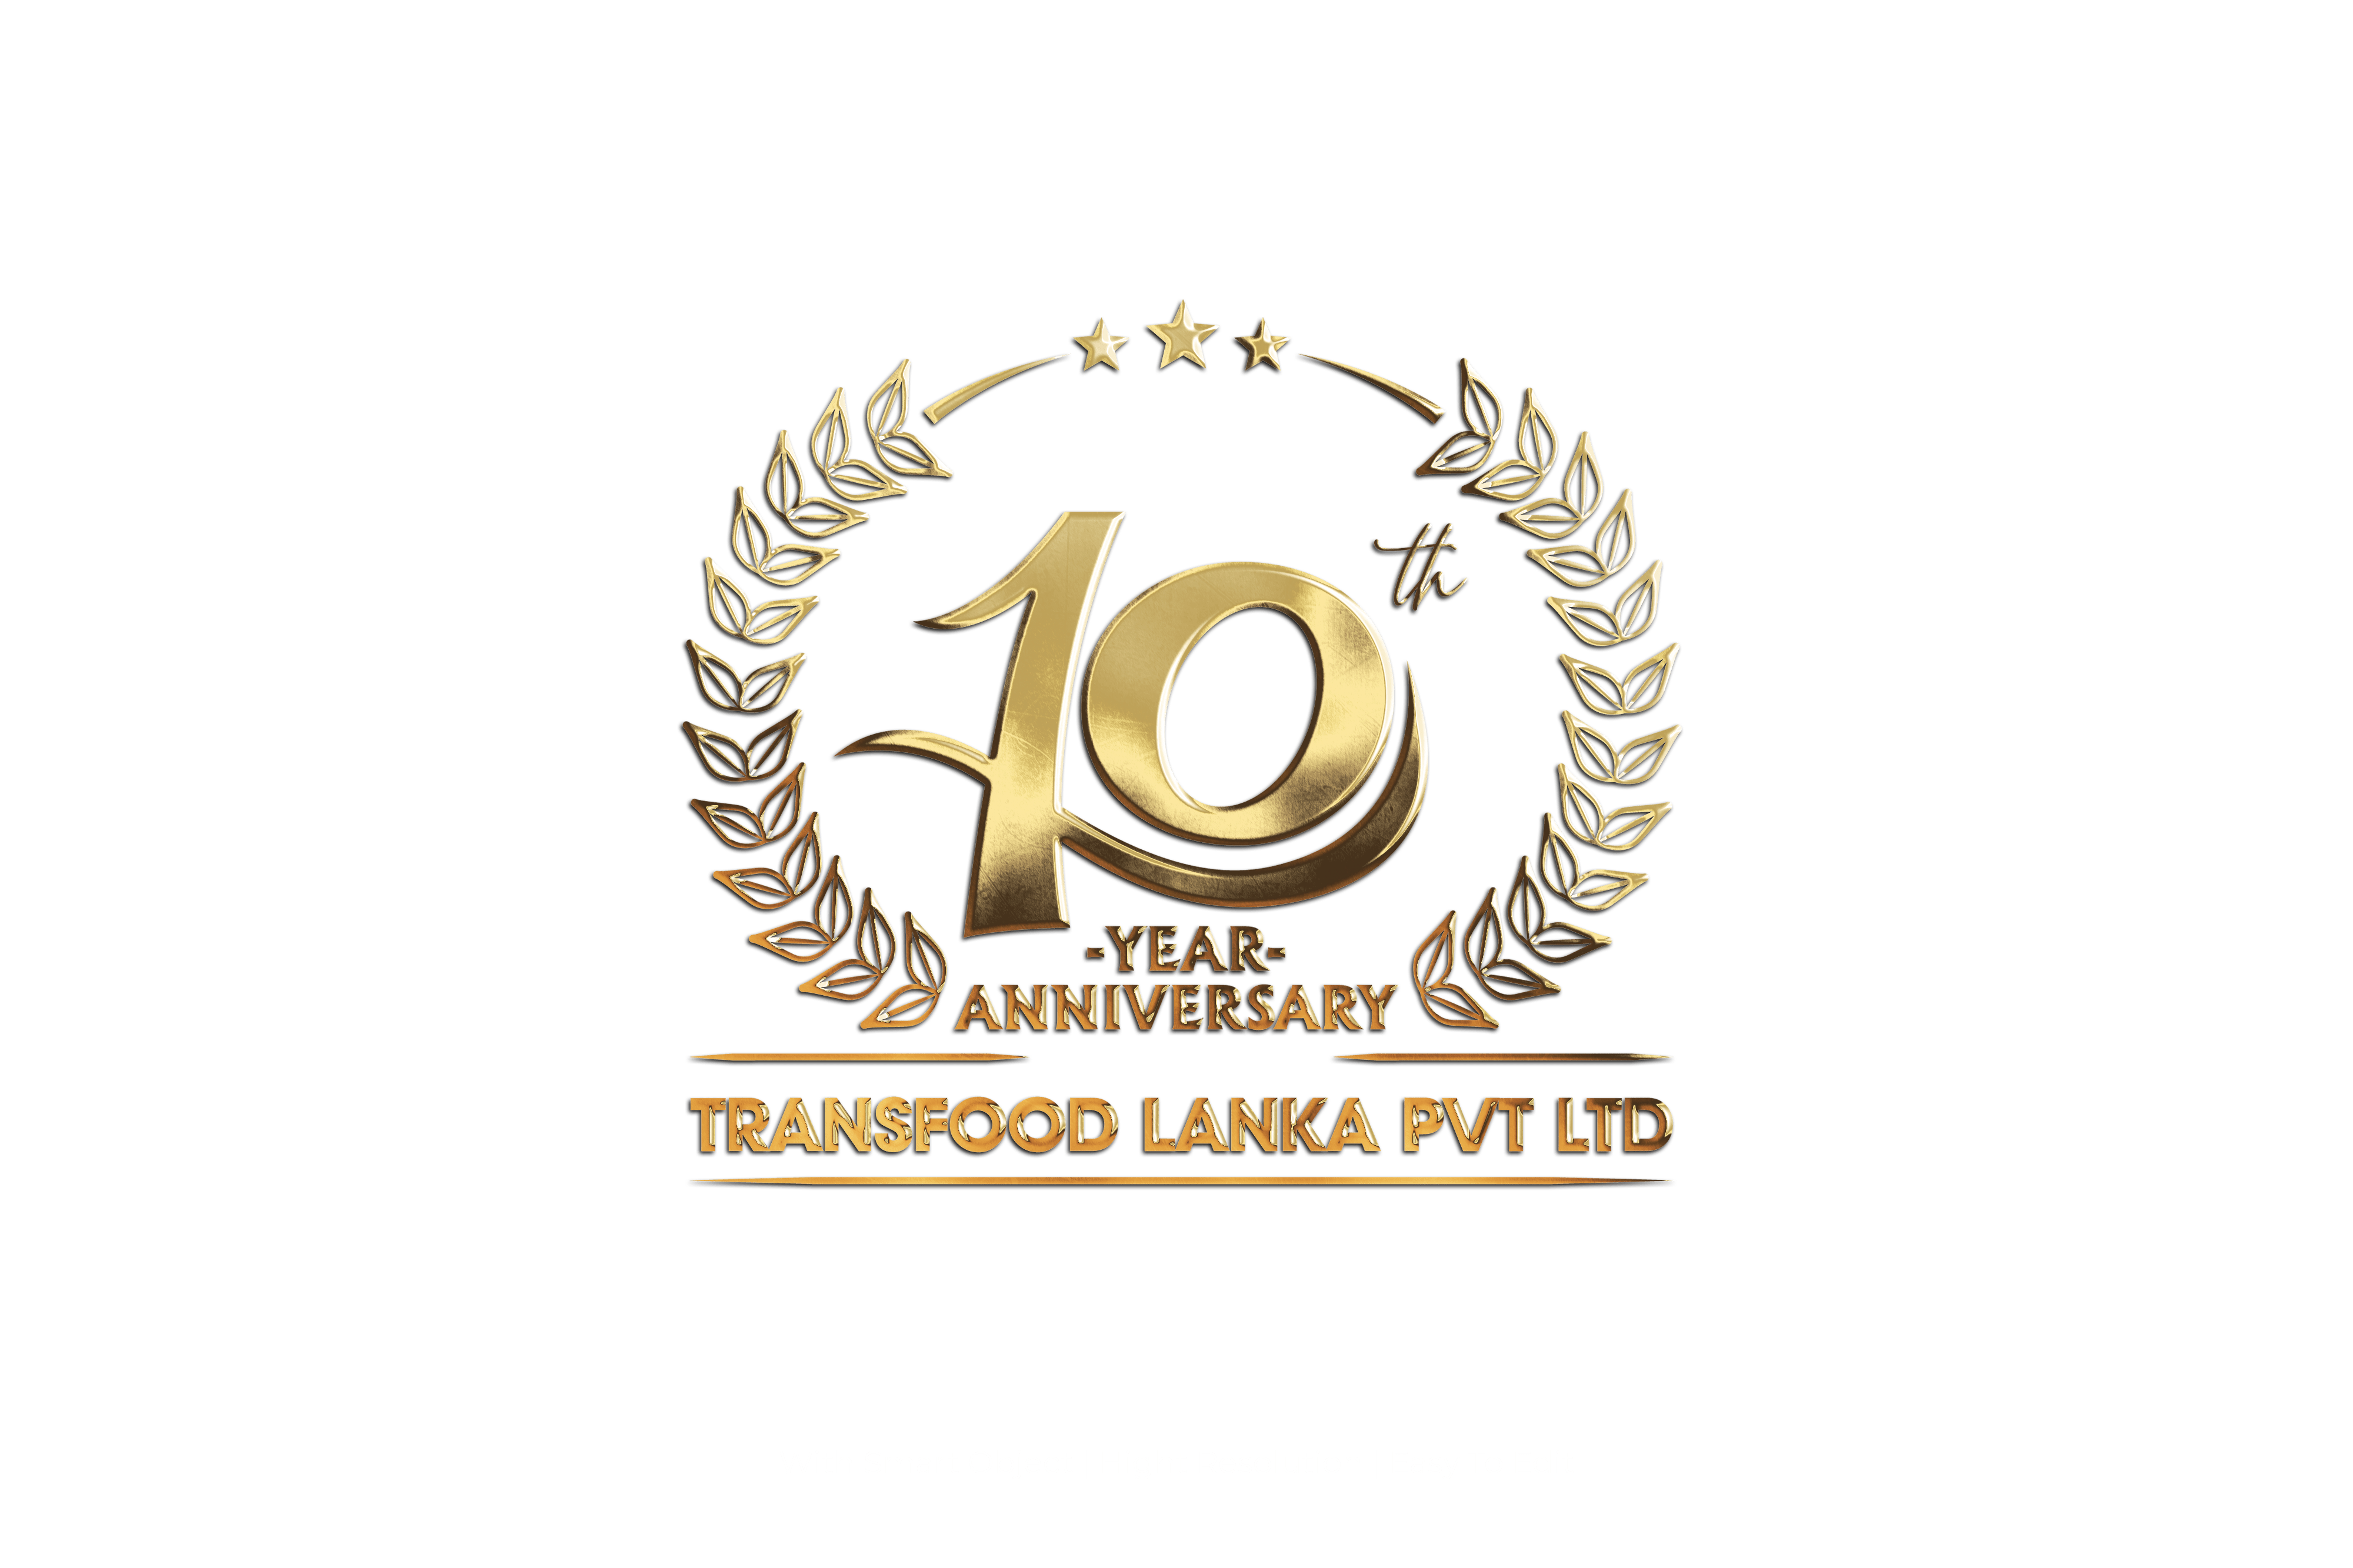 TF Lanka !0th Anniversary Logo